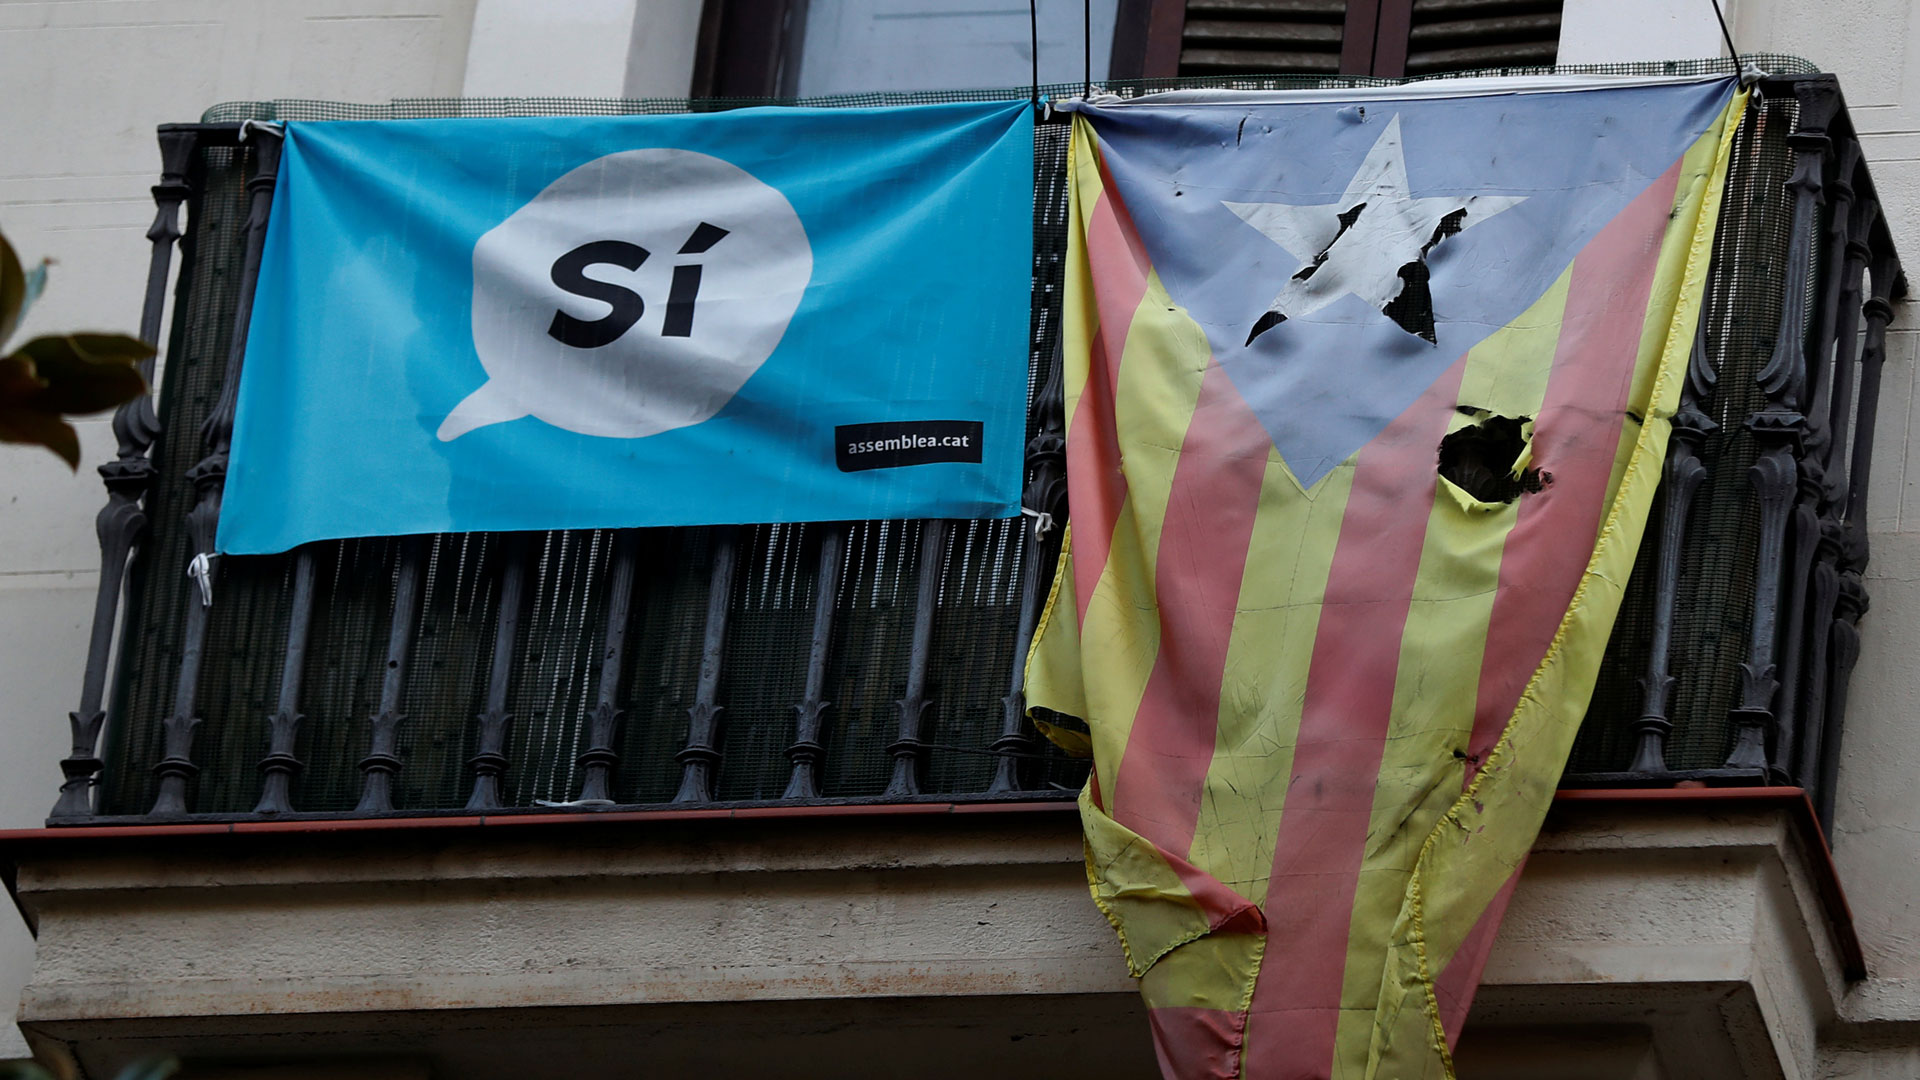 El Sindicat d’Estudiants convoca una huelga general el 25 y 26 de octubre "contra la represión franquista"